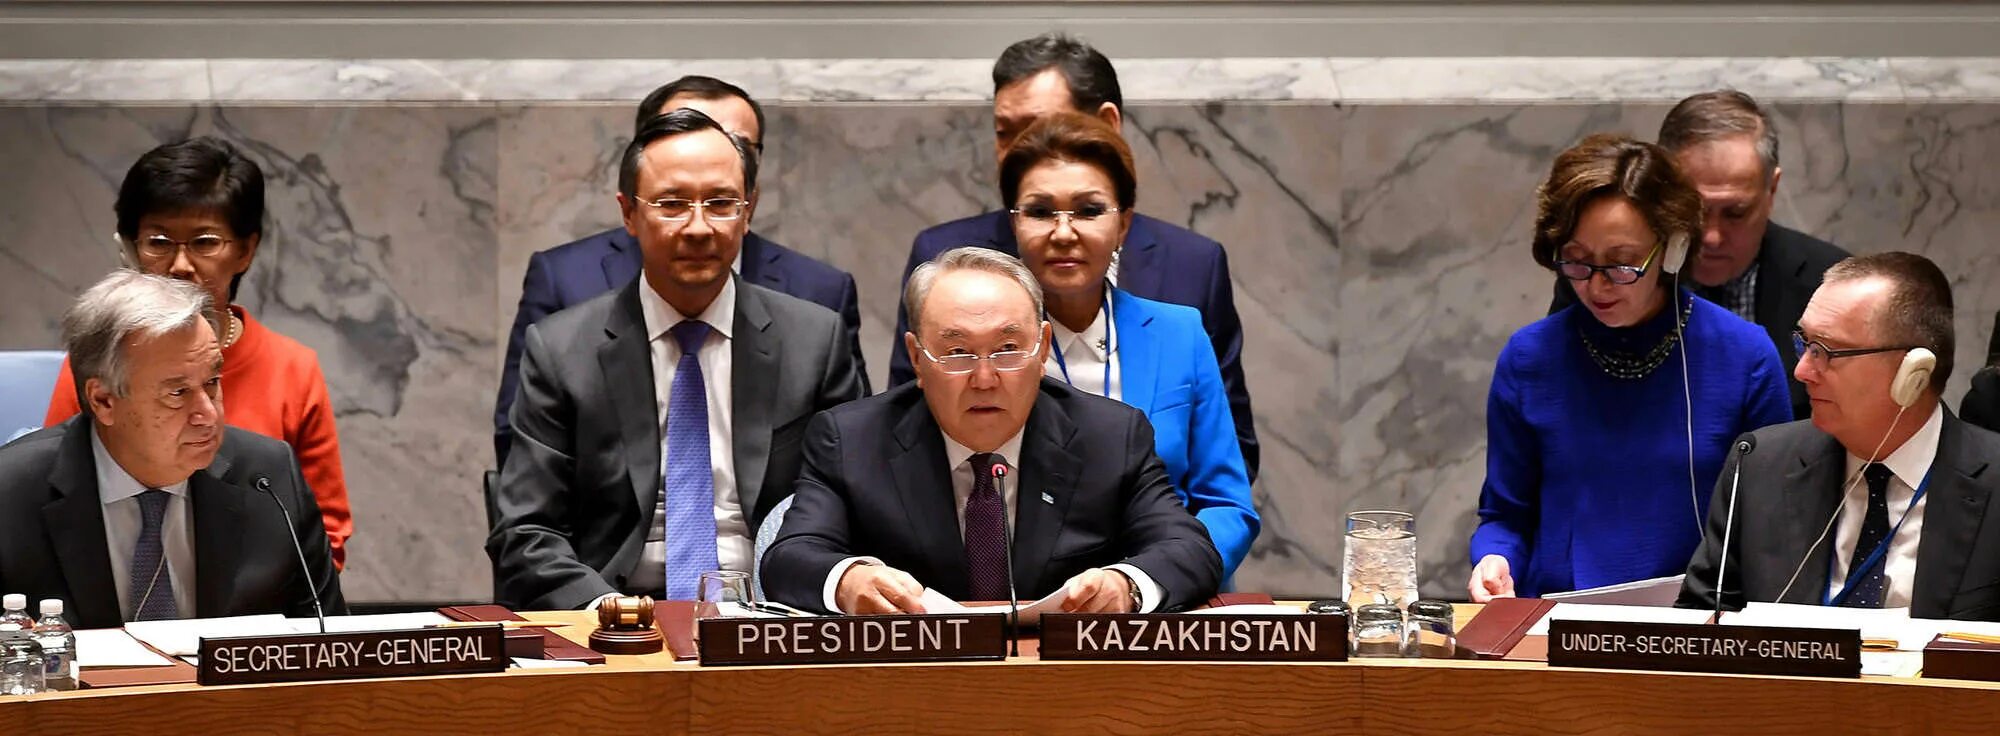 Казахстан Совбез ООН. Председатель совета безопасности ООН. Назарбаев выступление в ООН. Пять членов оон